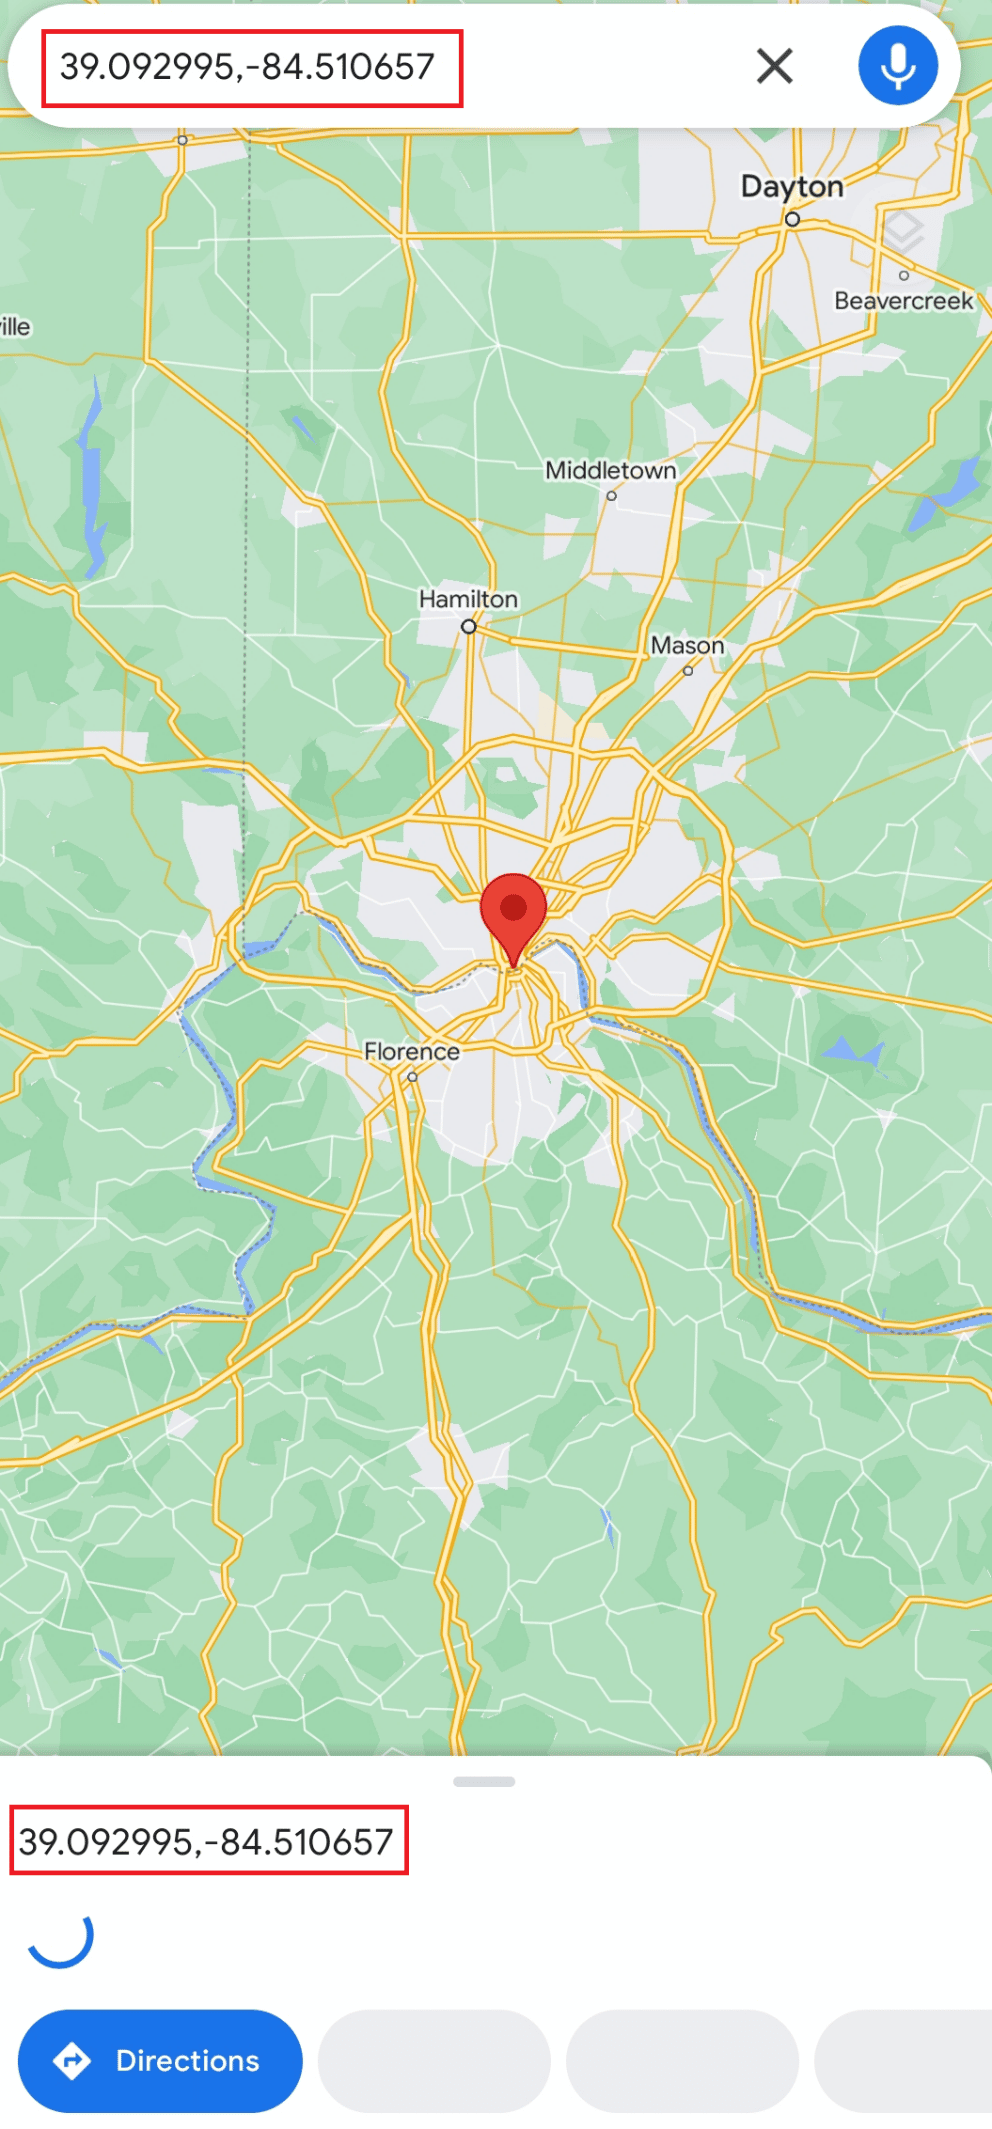 Finden Sie Cincinnati und drücken Sie lange auf den Standort auf dem Bildschirm Ihres Mobiltelefons, um die Koordinaten (39.09299,-84.51065) | zu erhalten auf halber Strecke zwischen zwei Orten